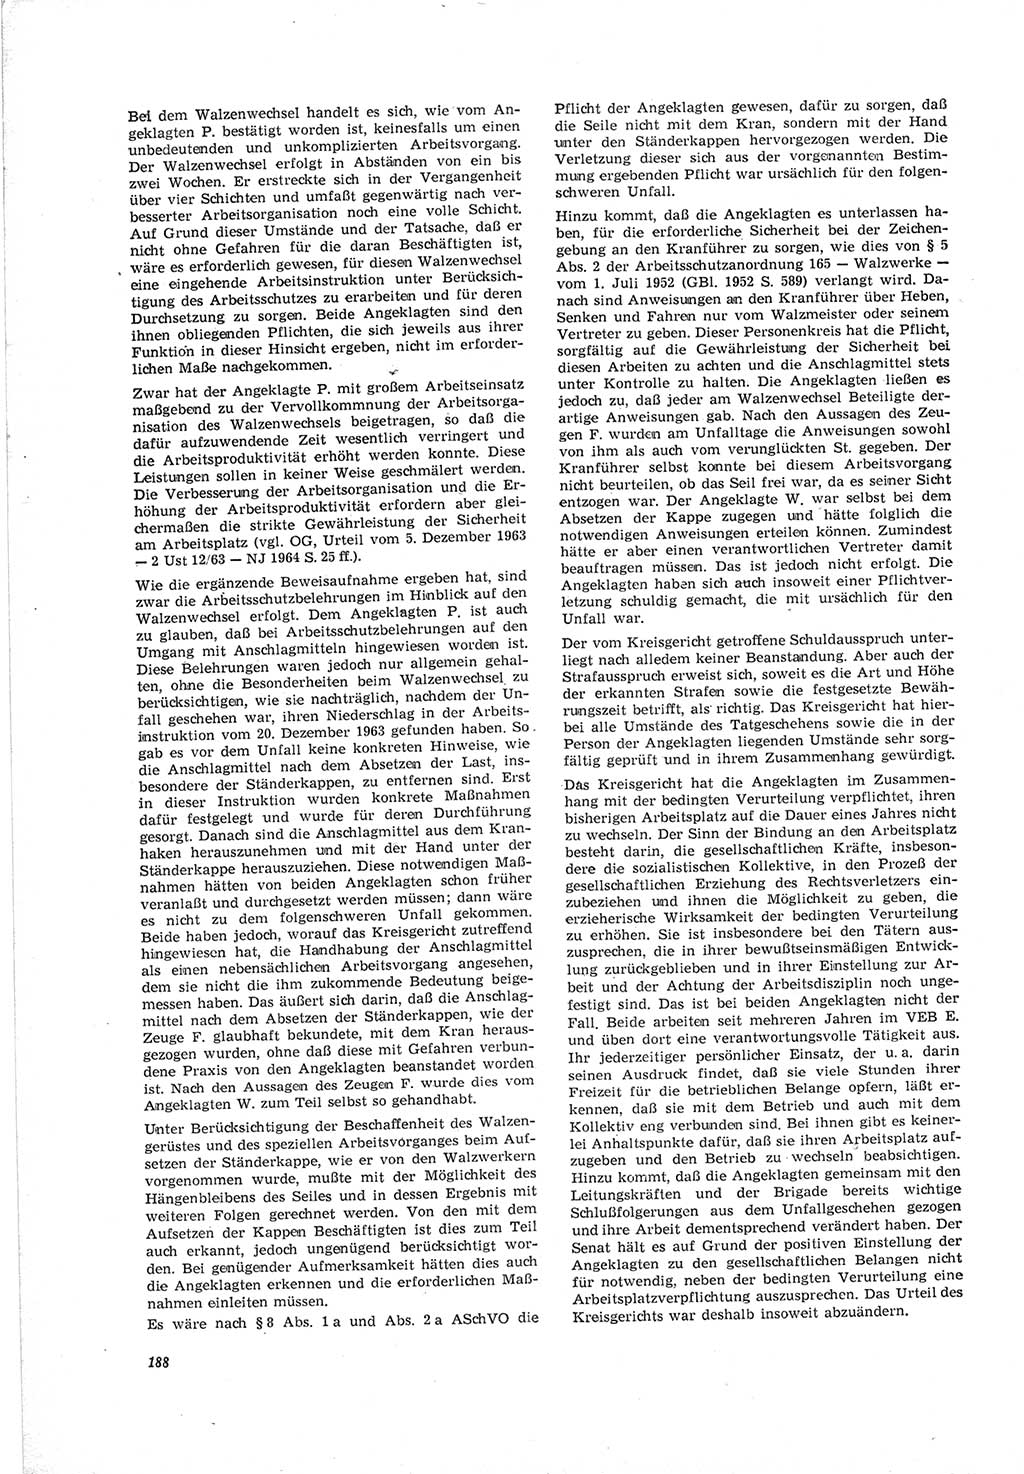 Neue Justiz (NJ), Zeitschrift für Recht und Rechtswissenschaft [Deutsche Demokratische Republik (DDR)], 19. Jahrgang 1965, Seite 188 (NJ DDR 1965, S. 188)